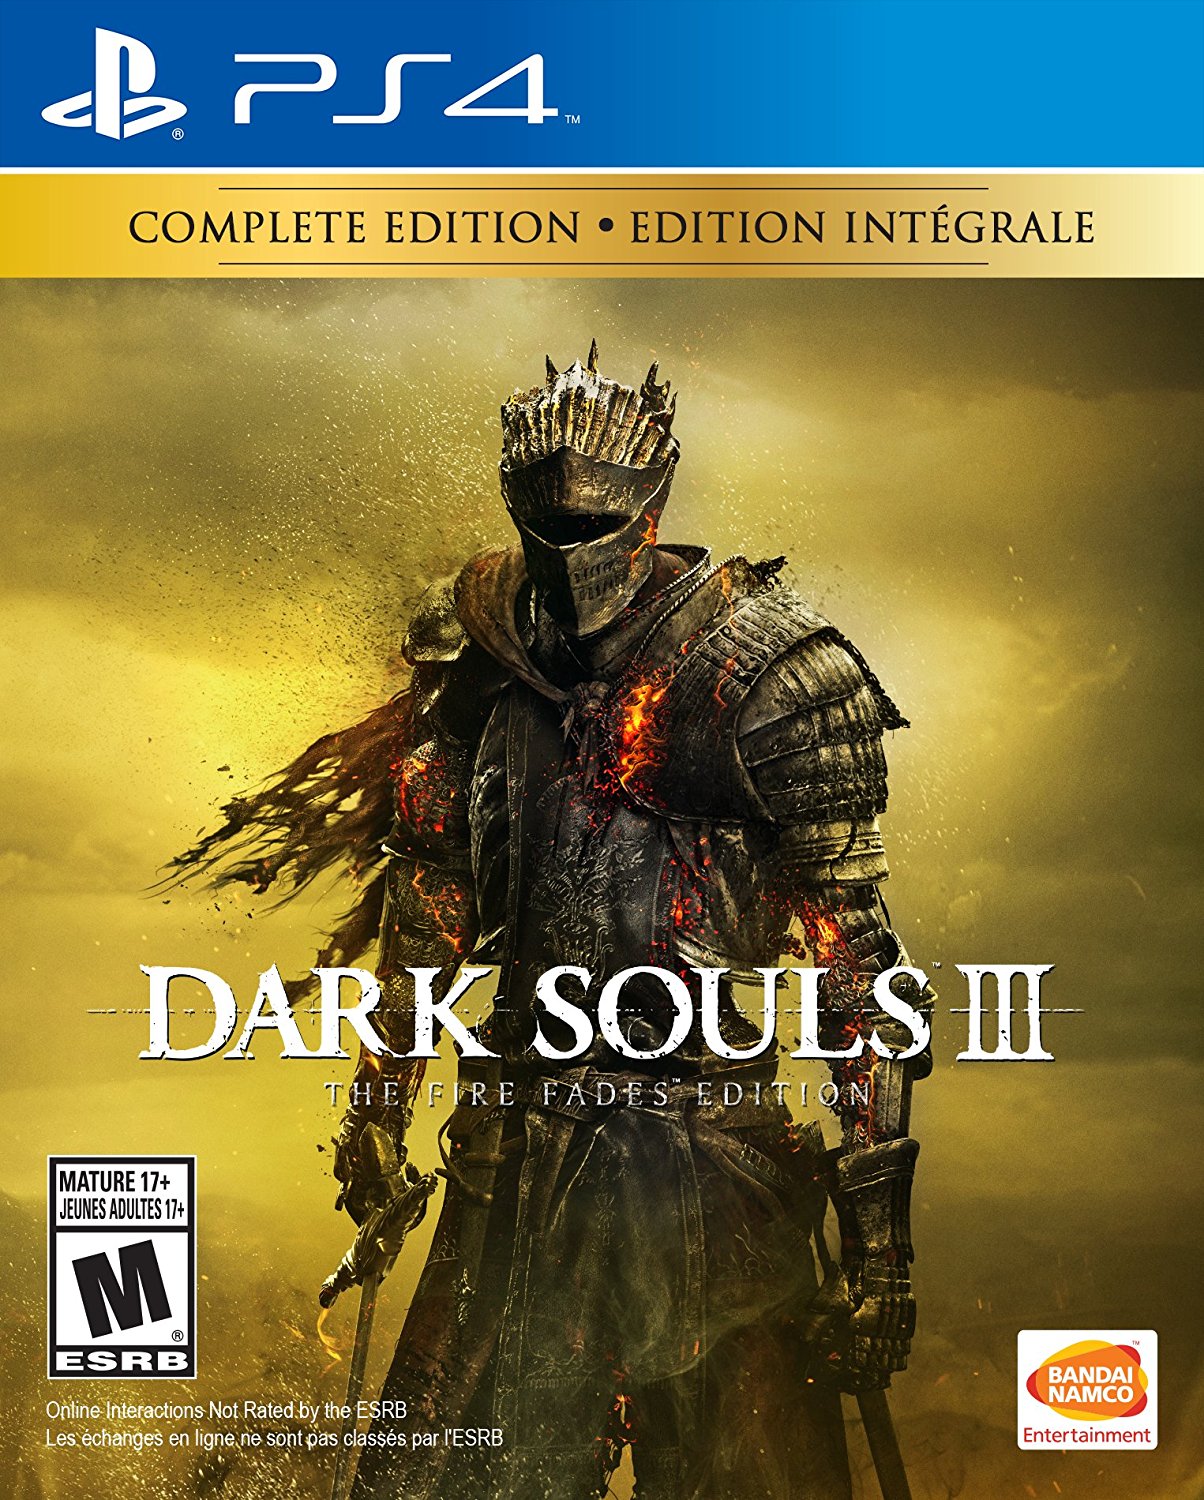 Category:Dark Souls II: Boss Soul Weapons, Dark Souls Wiki